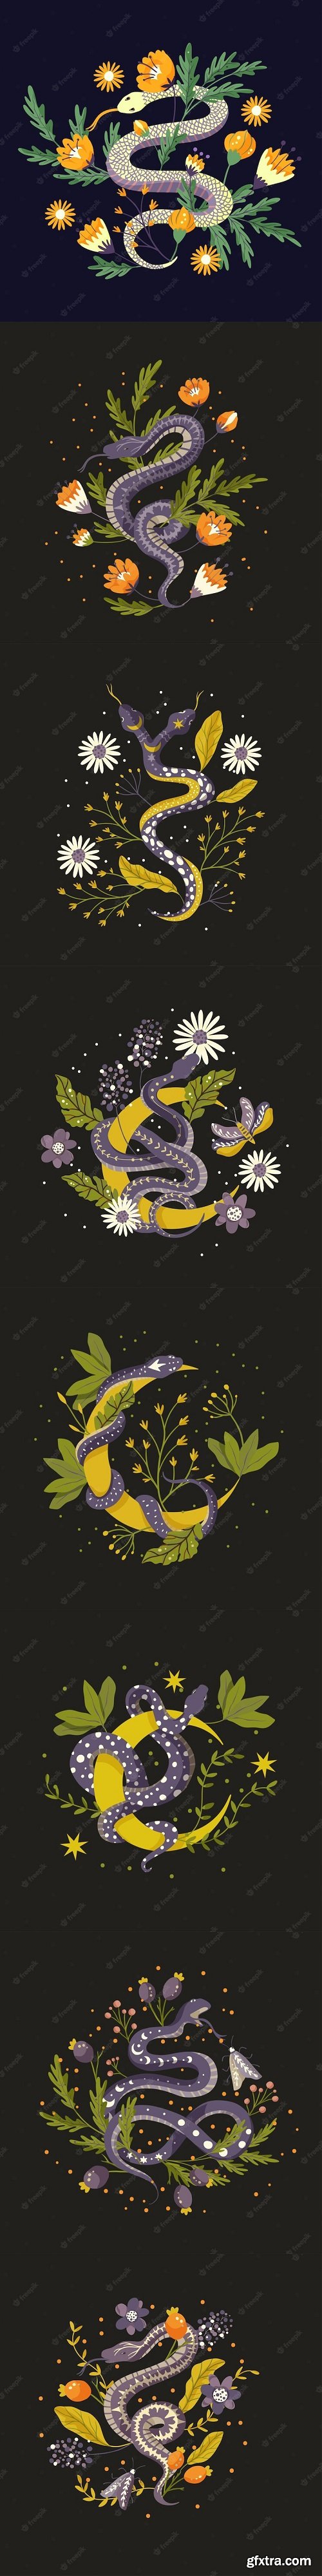 Snake floral background vector snake flower magic art